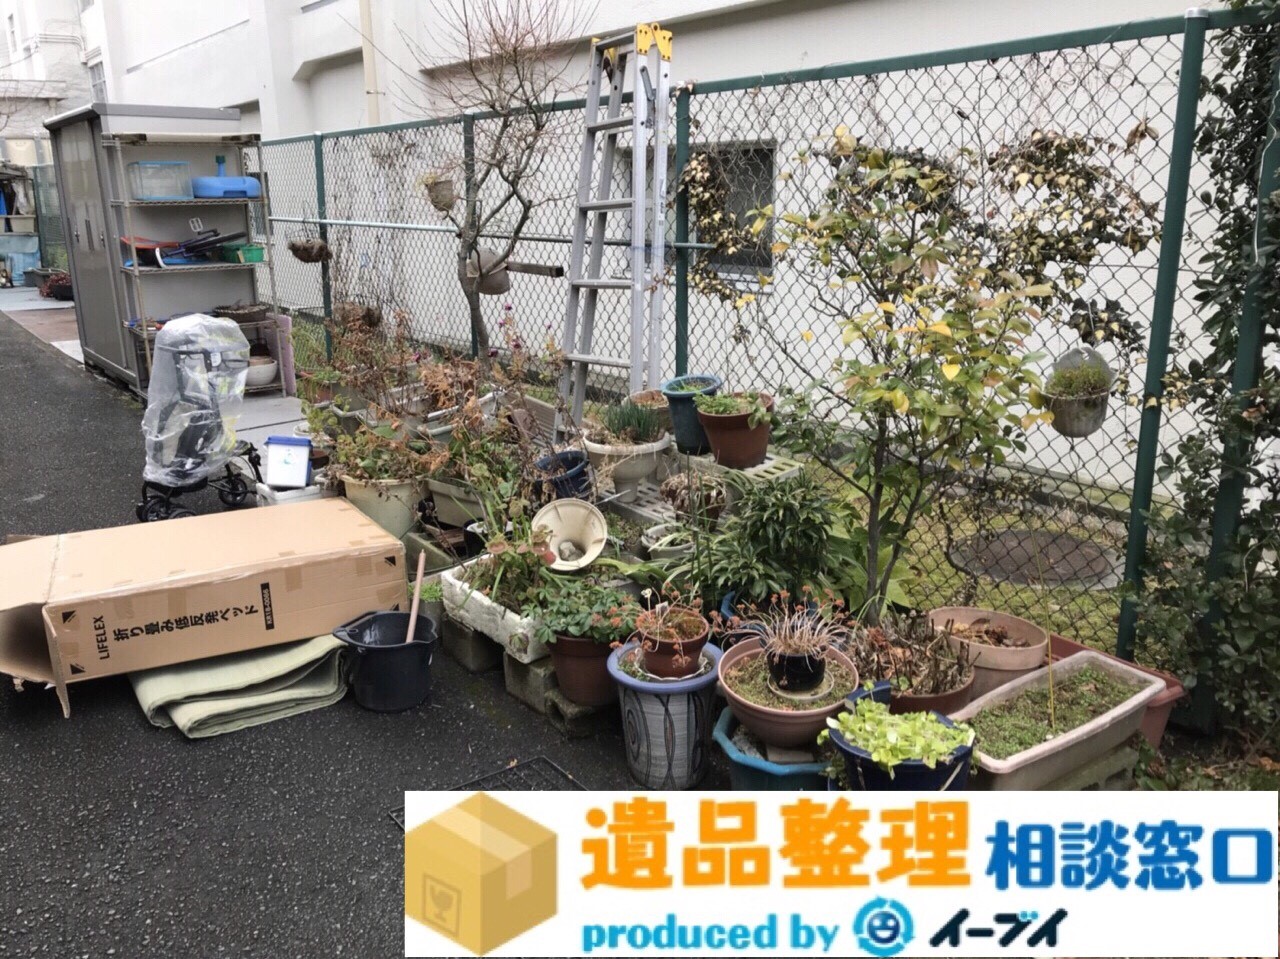 大阪府摂津市で遺品整理の作業に伴い植木鉢や洗面台の片付けをしました。のアイキャッチ